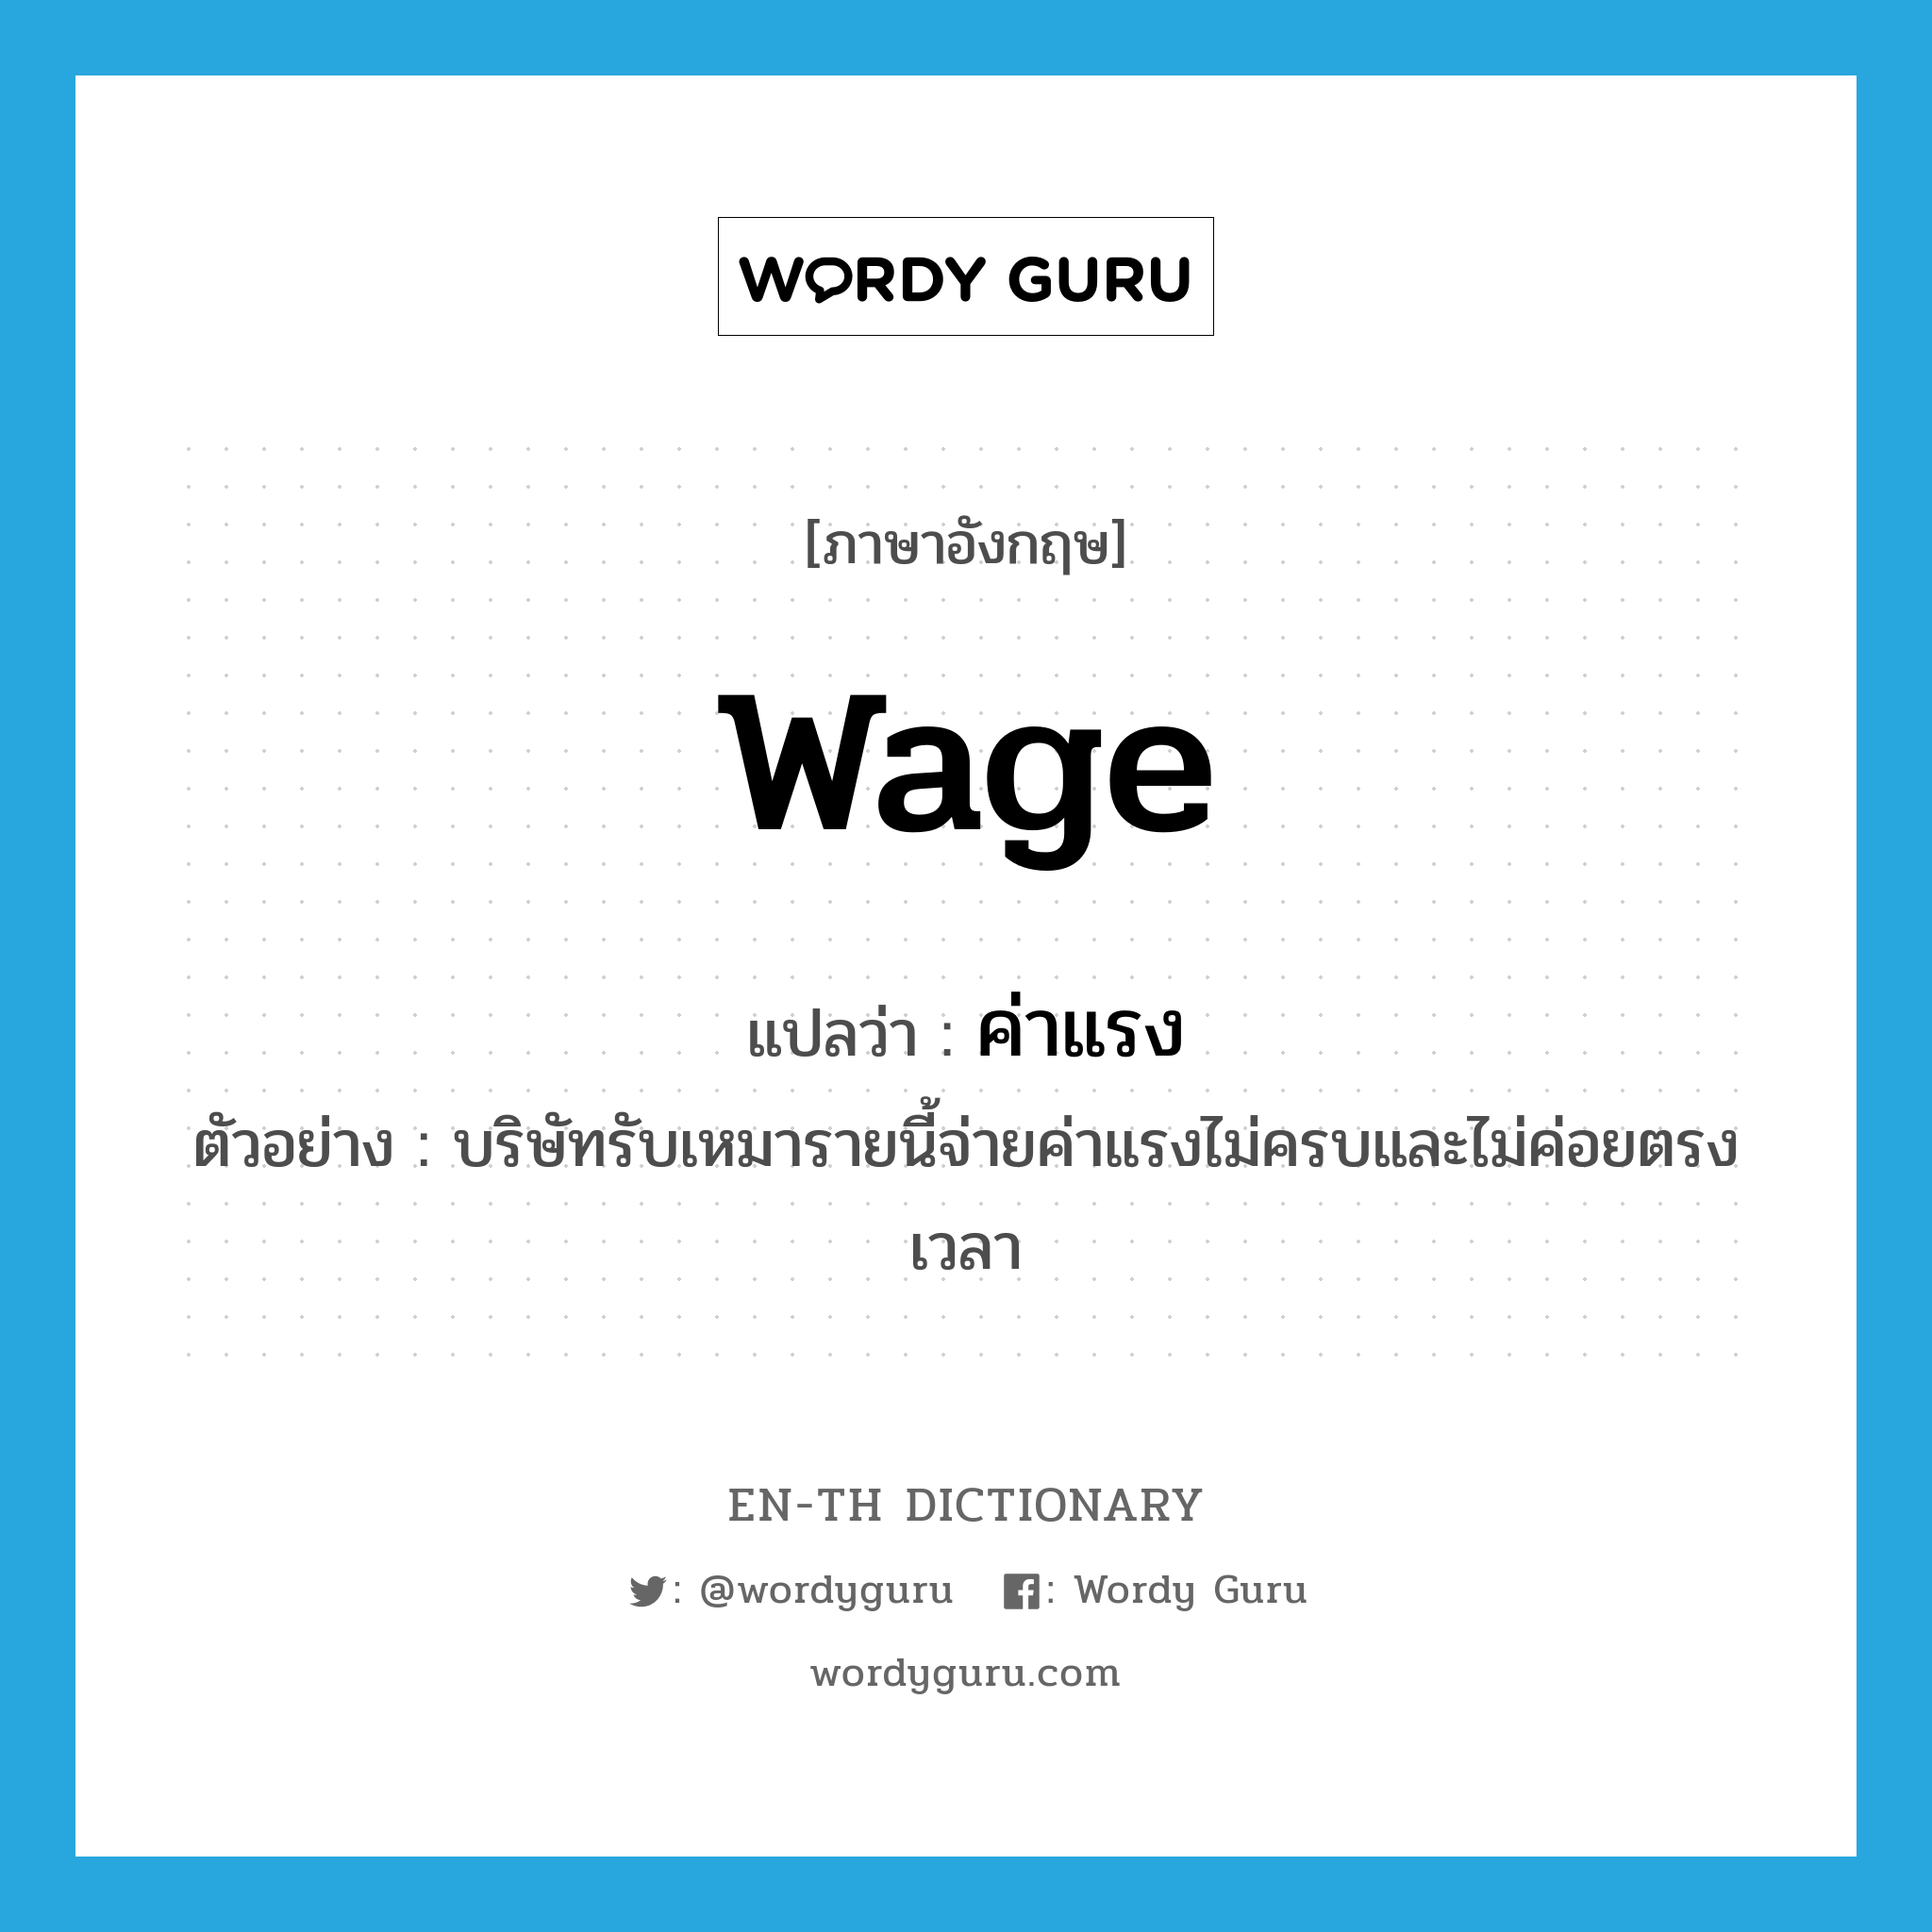 wage แปลว่า?, คำศัพท์ภาษาอังกฤษ wage แปลว่า ค่าแรง ประเภท N ตัวอย่าง บริษัทรับเหมารายนี้จ่ายค่าแรงไม่ครบและไม่ค่อยตรงเวลา หมวด N